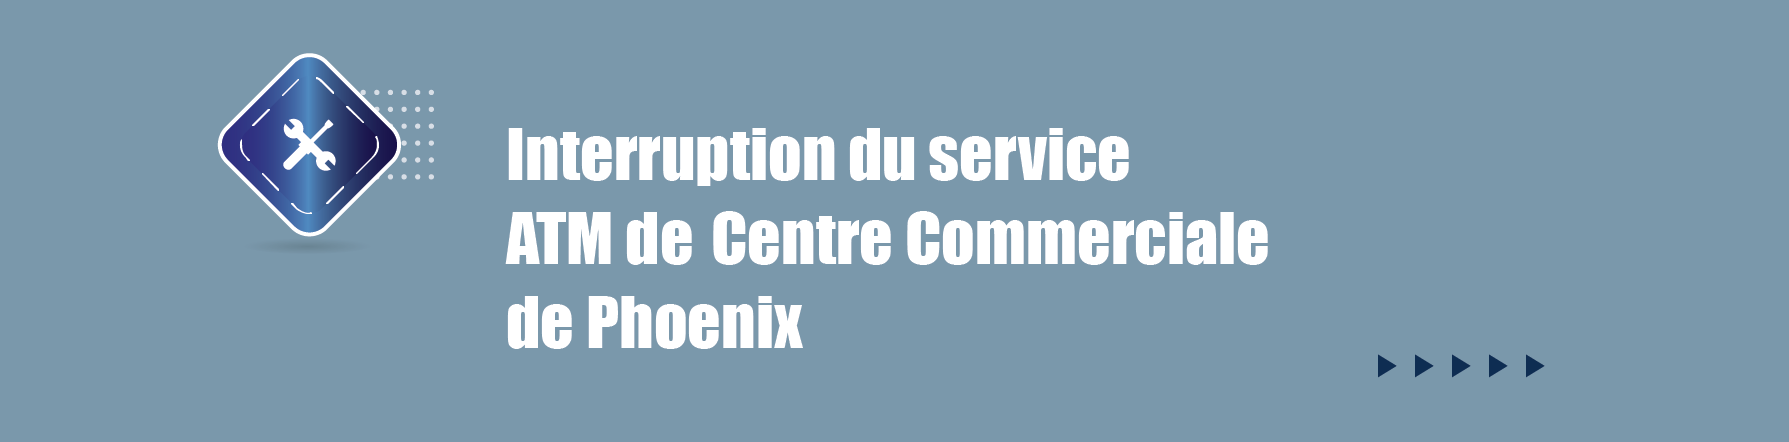 COMMUNIQUE – Interruption du service - ATM du Centre Commerciale de Phoenix